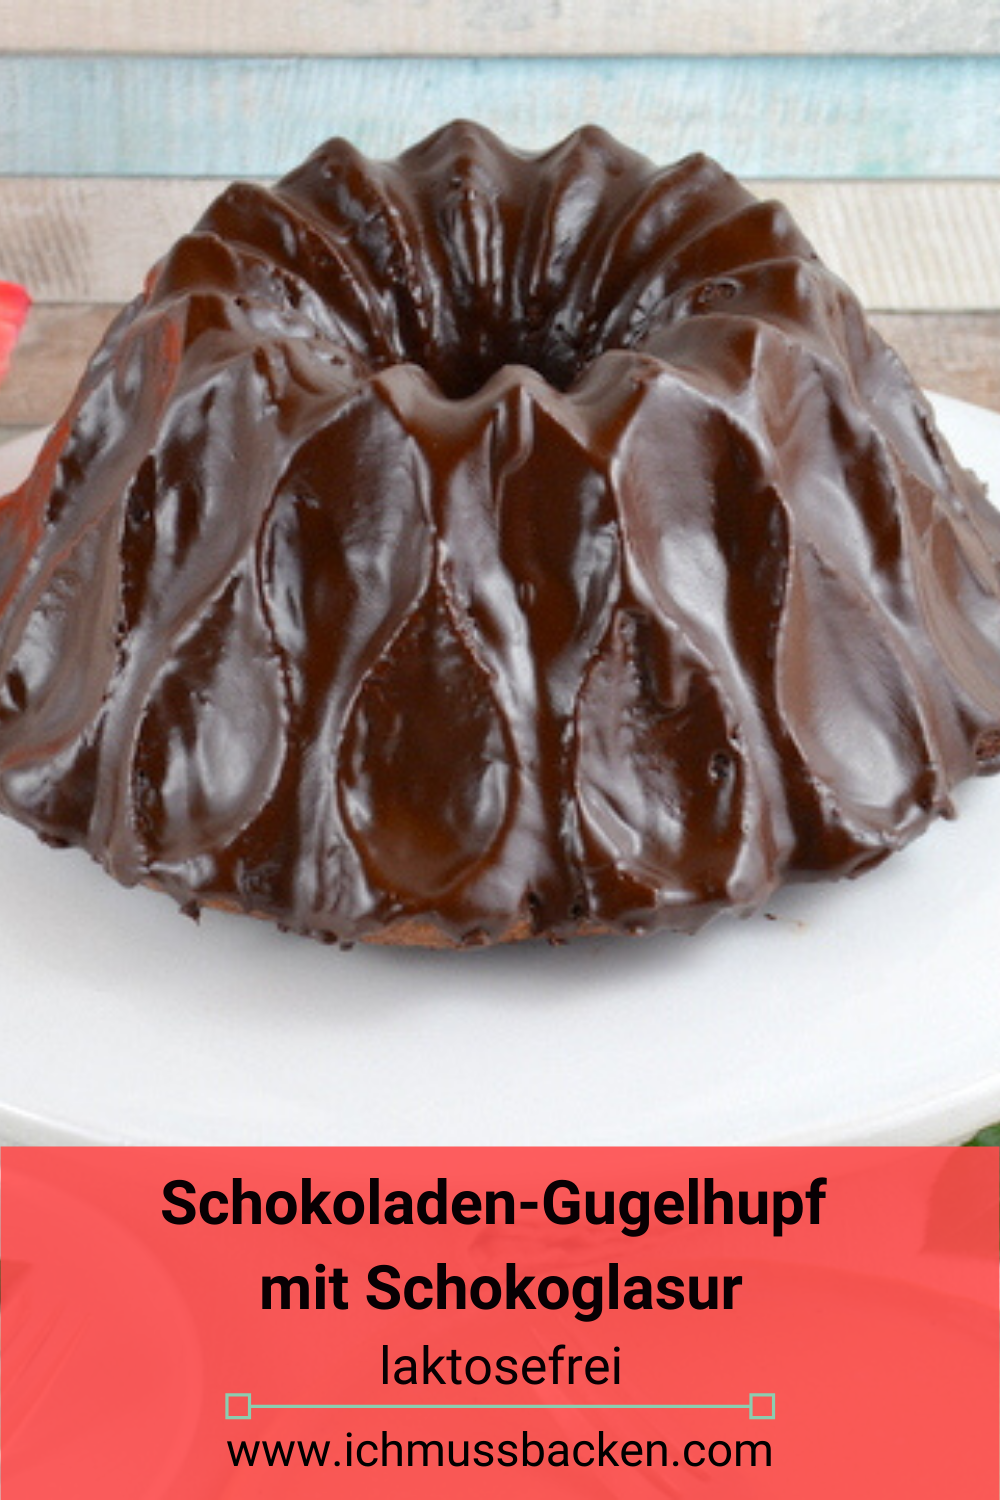 Schokoladengugelhupf mit Schokoglasur